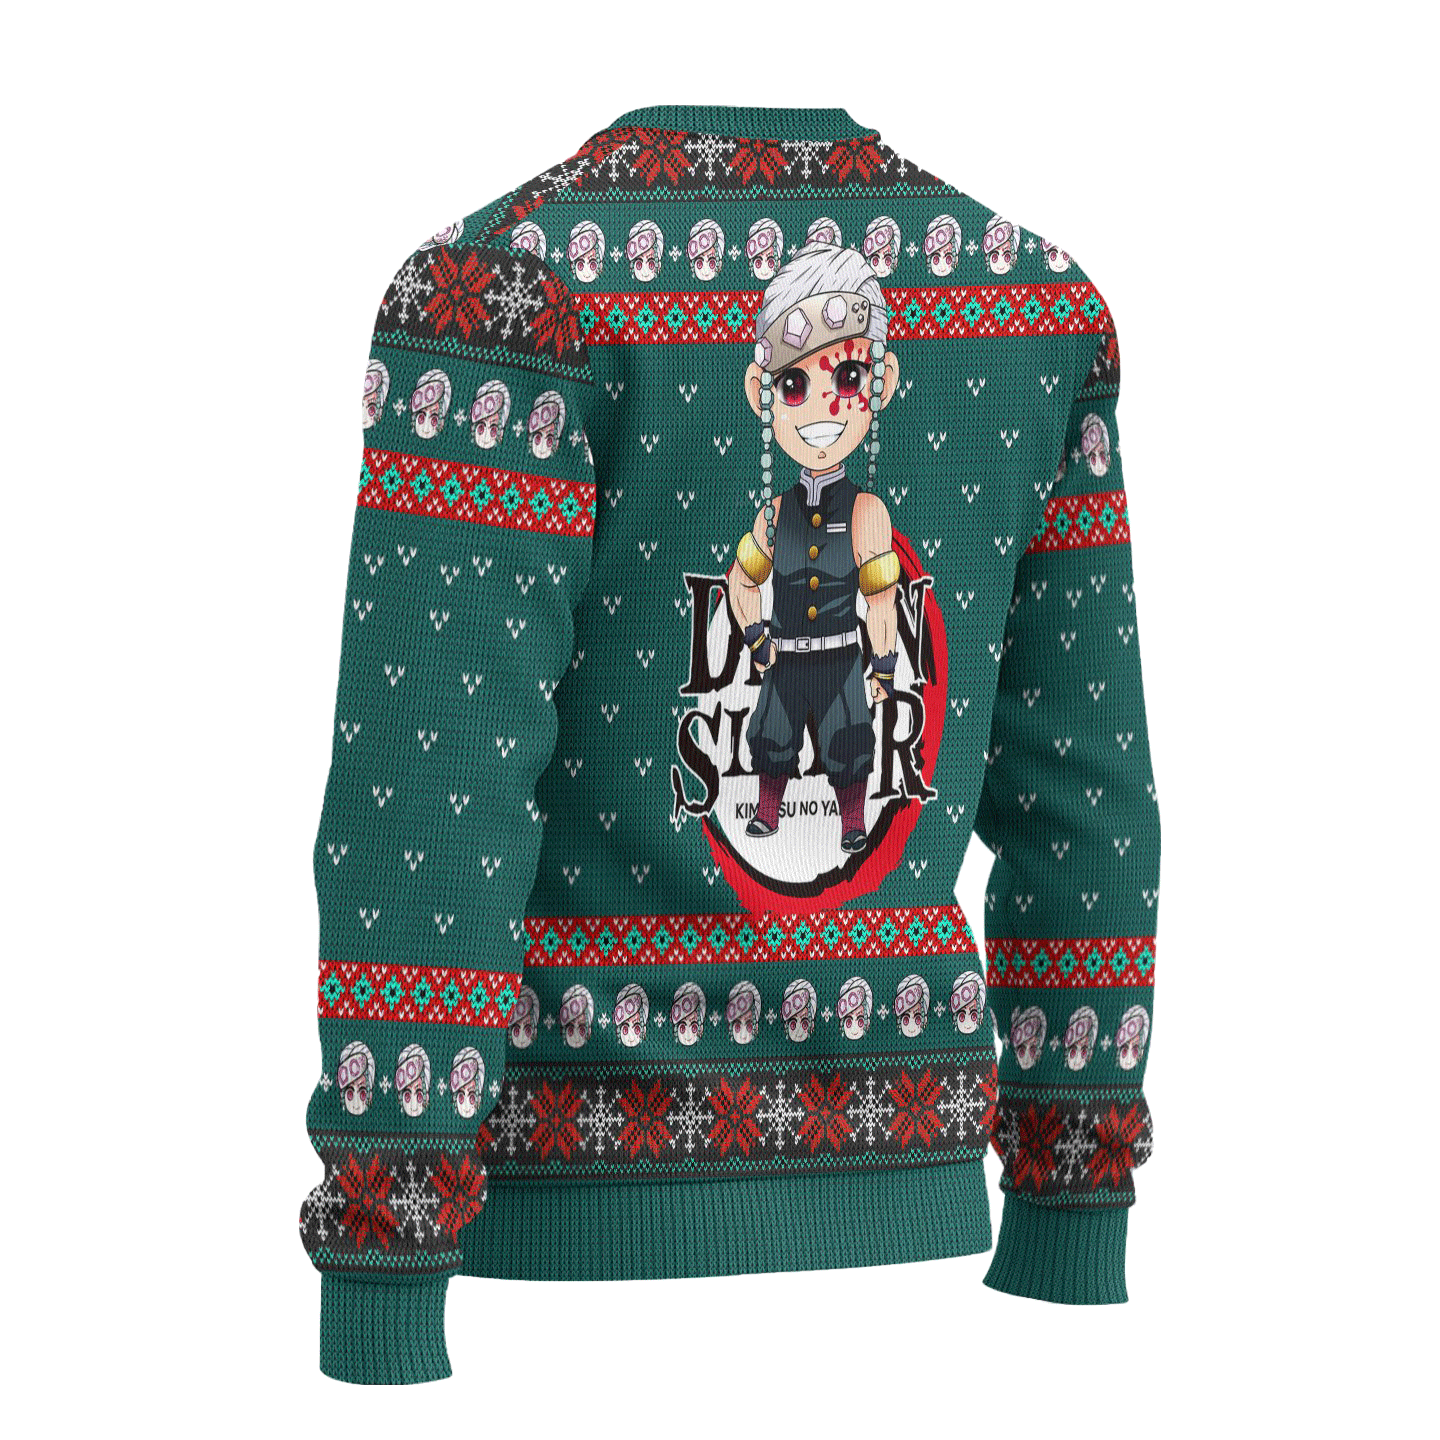 Tengen Uzui Demon Slayer Anime Ugly Christmas Sweater Xmas Gift